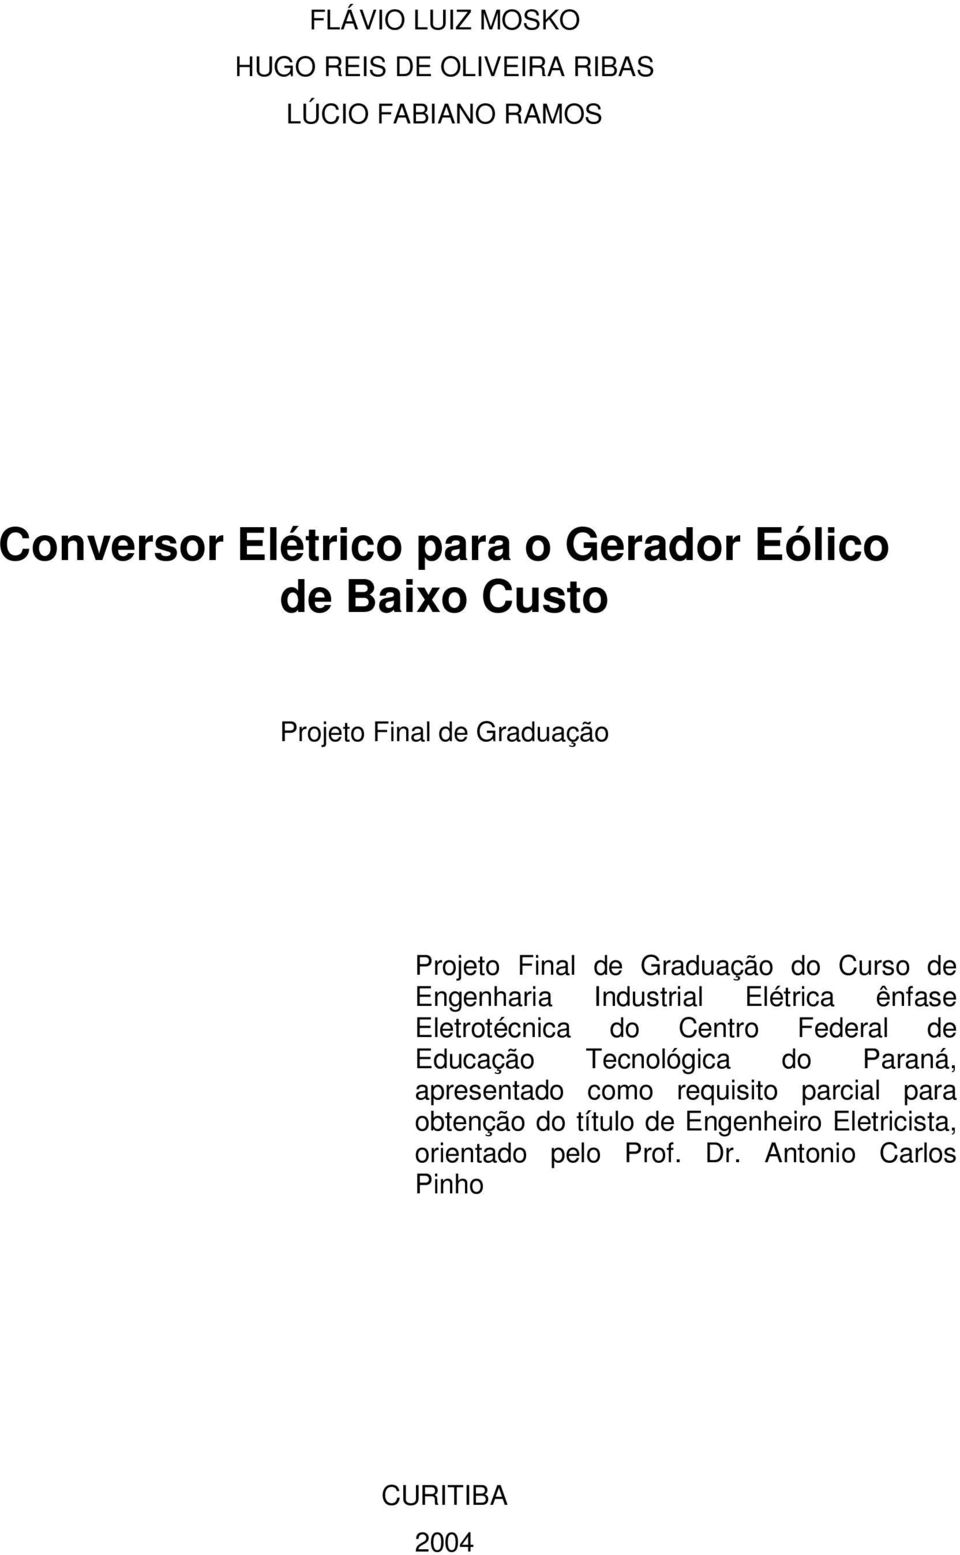 ênfase Eletrotécnica do Centro Federal de Educação Tecnológica do Paraná, apresentado como requisito parcial